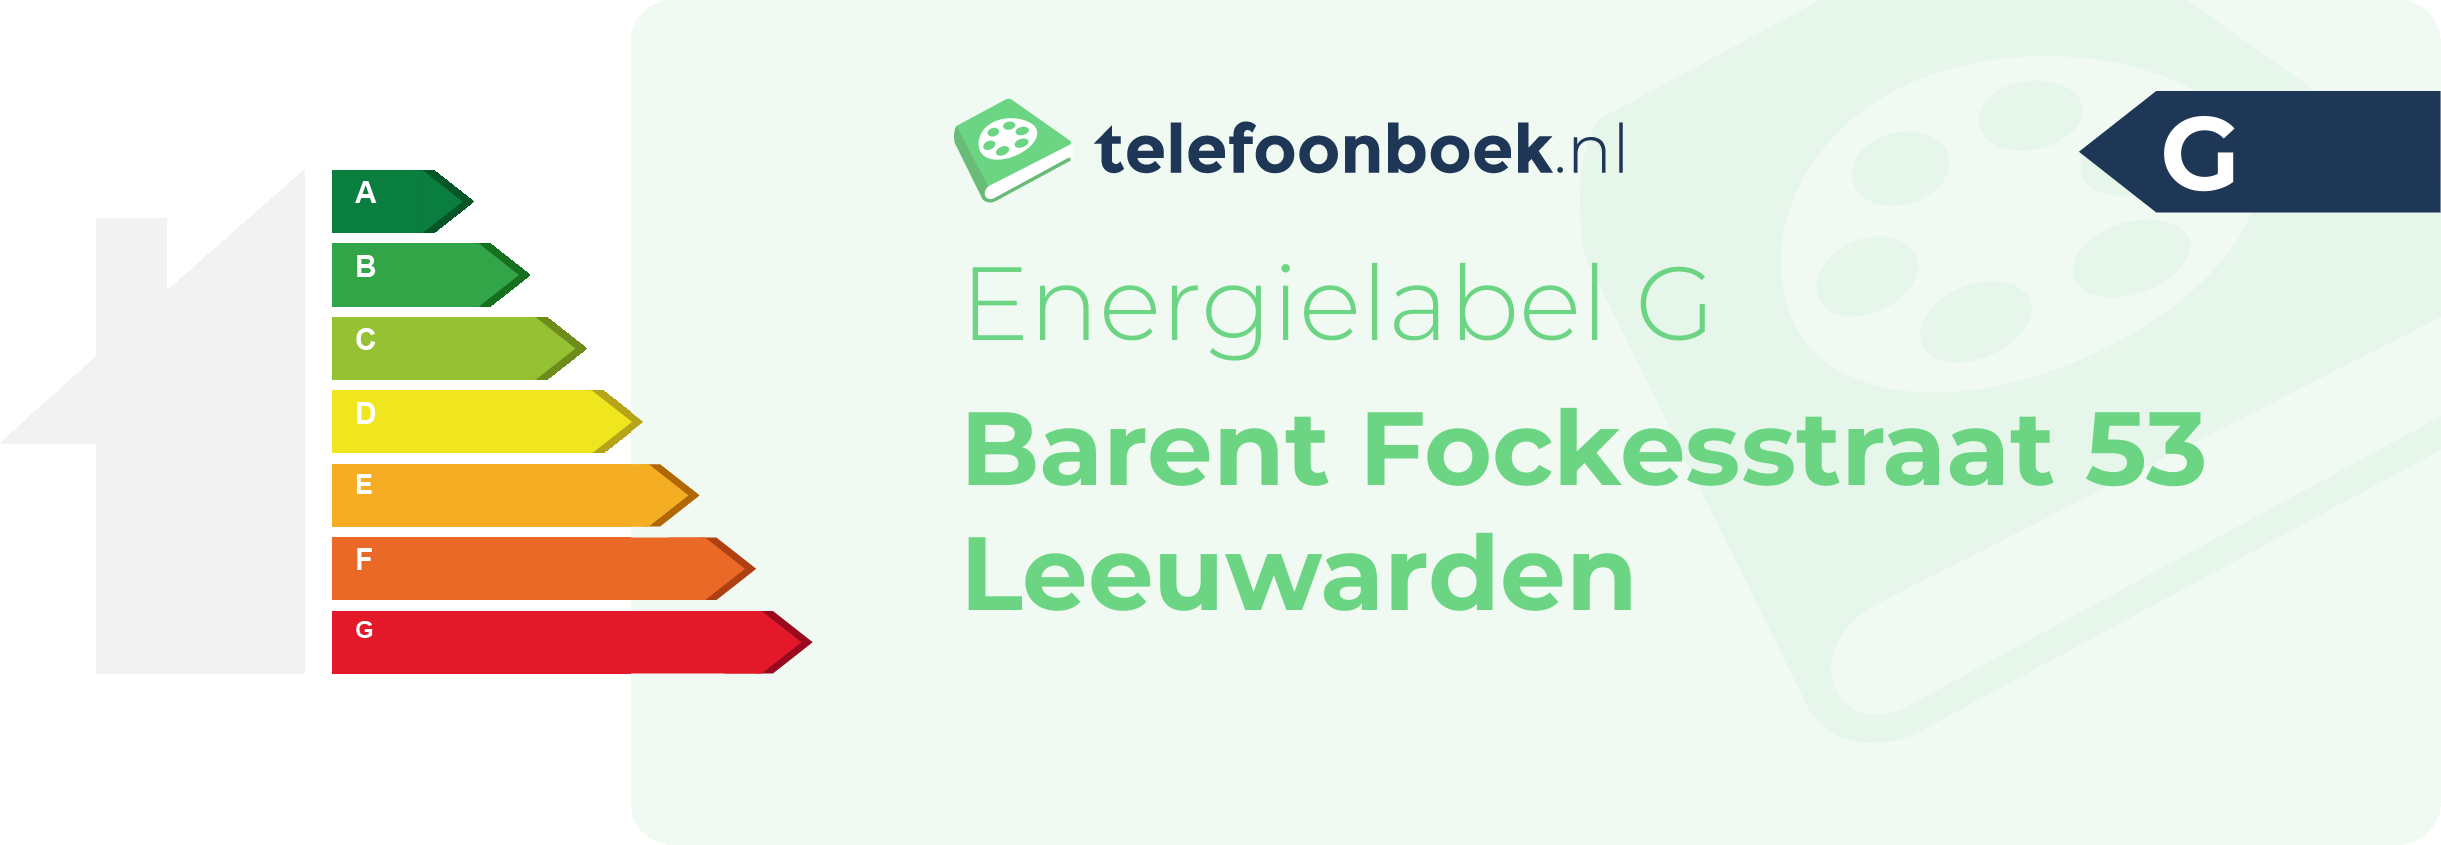 Energielabel Barent Fockesstraat 53 Leeuwarden